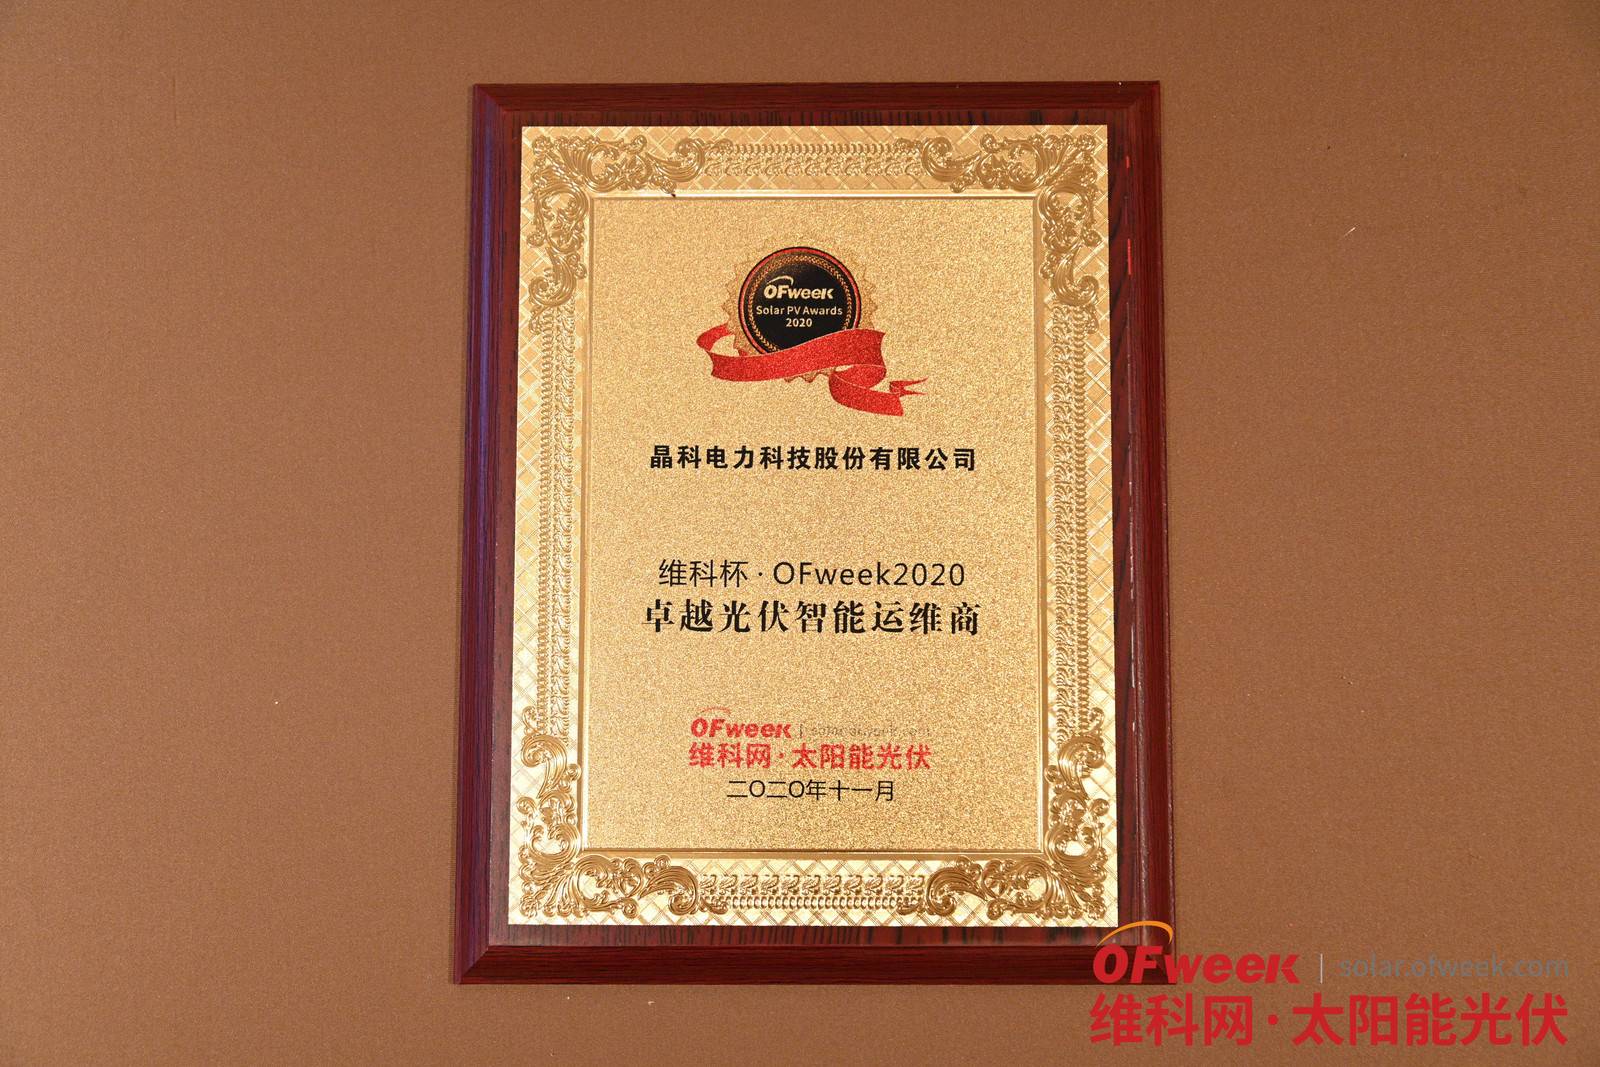 晶科电力科技股份有限公司荣获维科杯·OFweek2020卓越光伏智能运维商